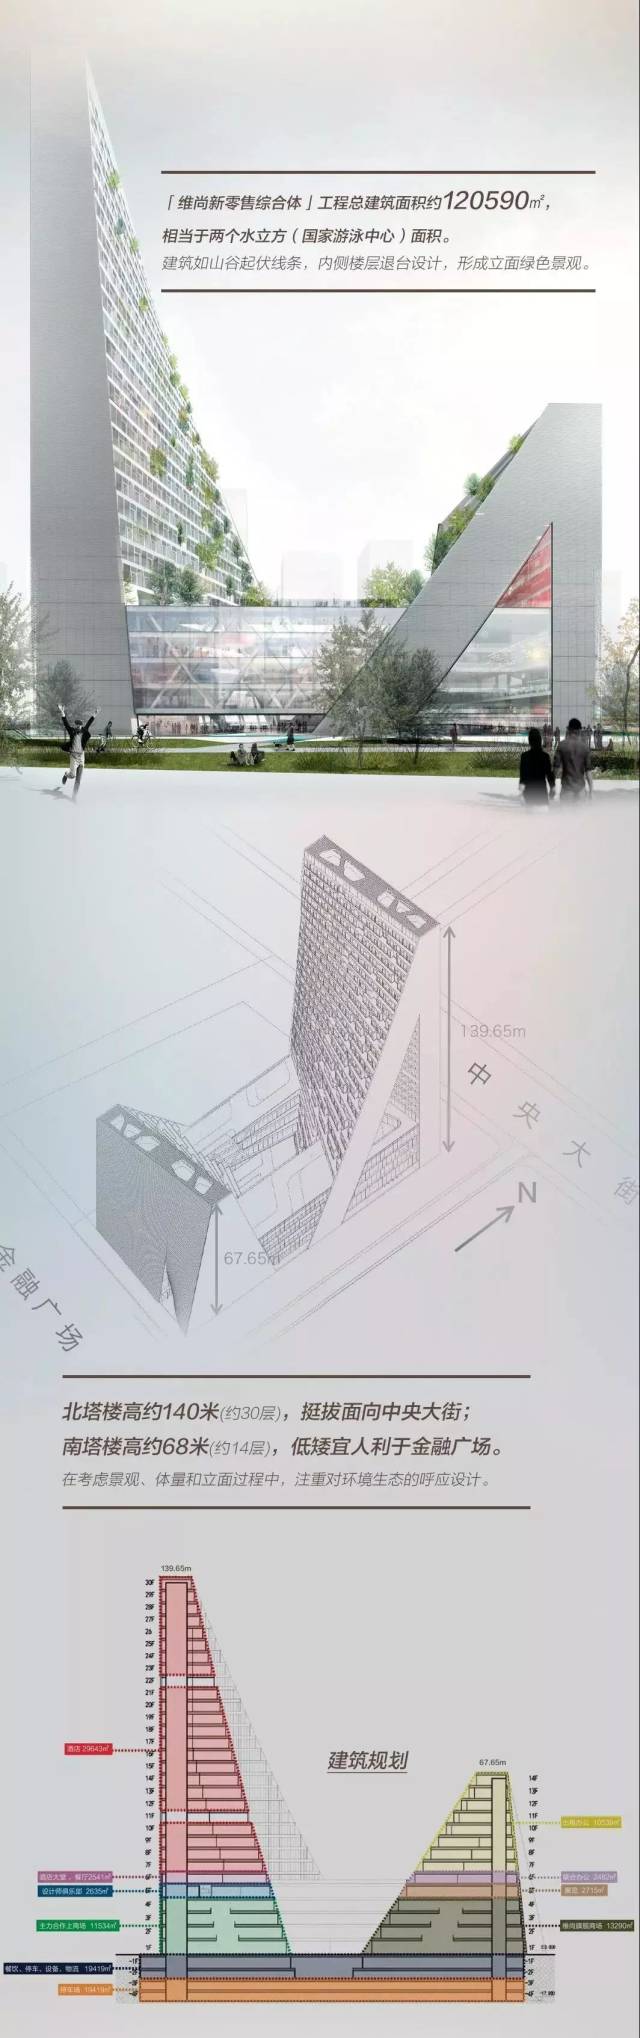 外立面呈现两个三角形,建筑中间为镂空设计 用24年,造一座城